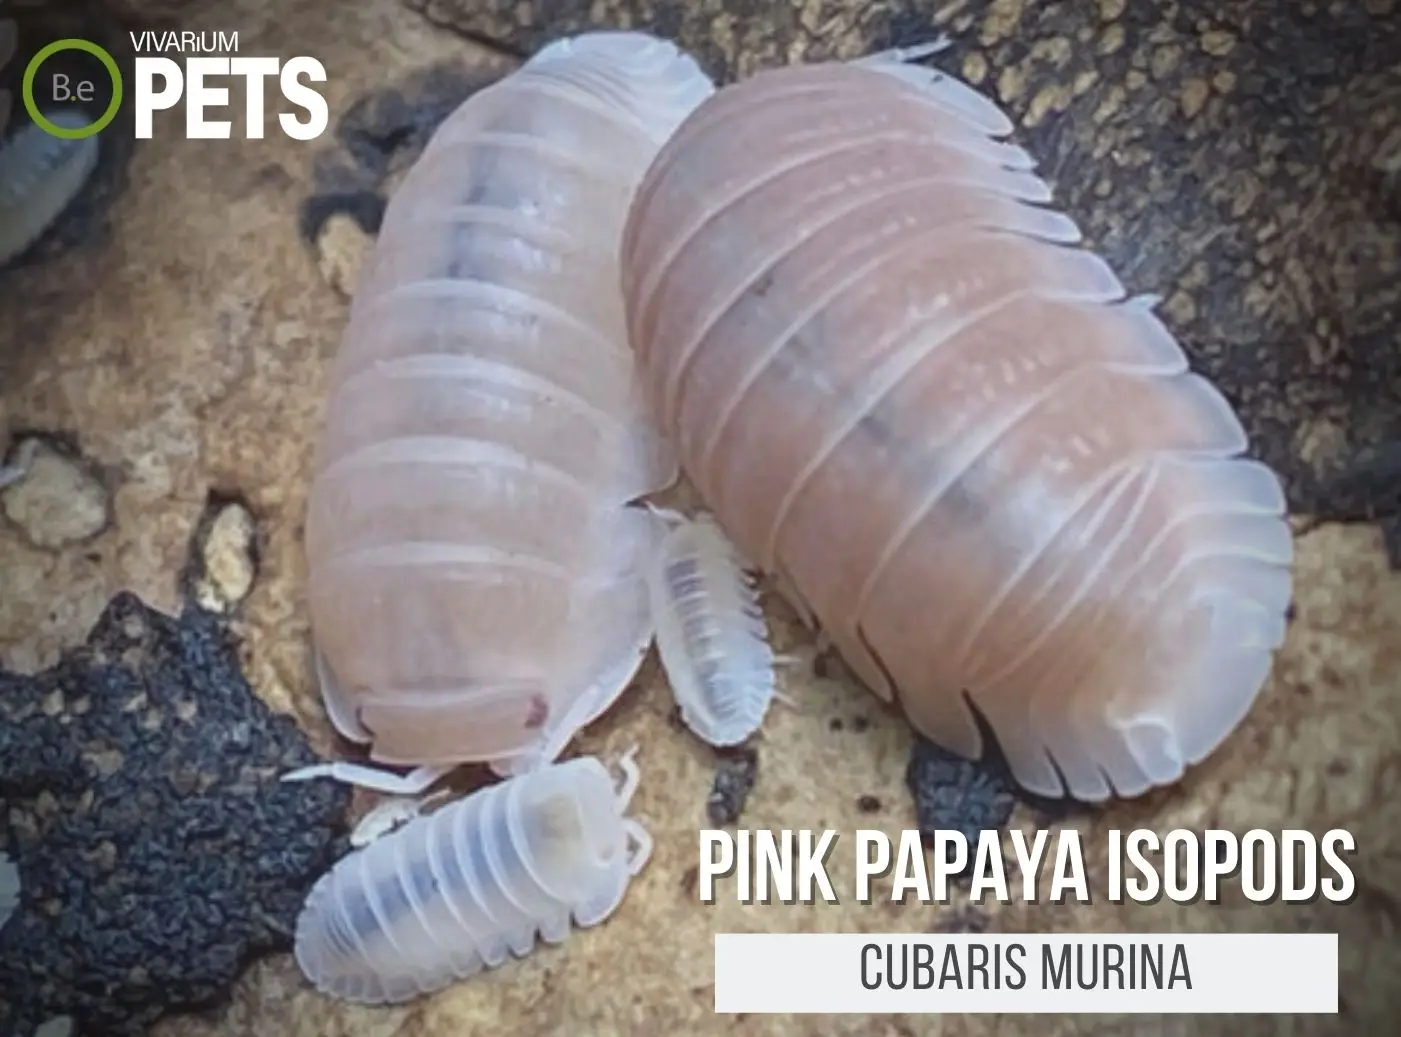 A Cubaris murina "Pink Papaya Isopods" Care Guide